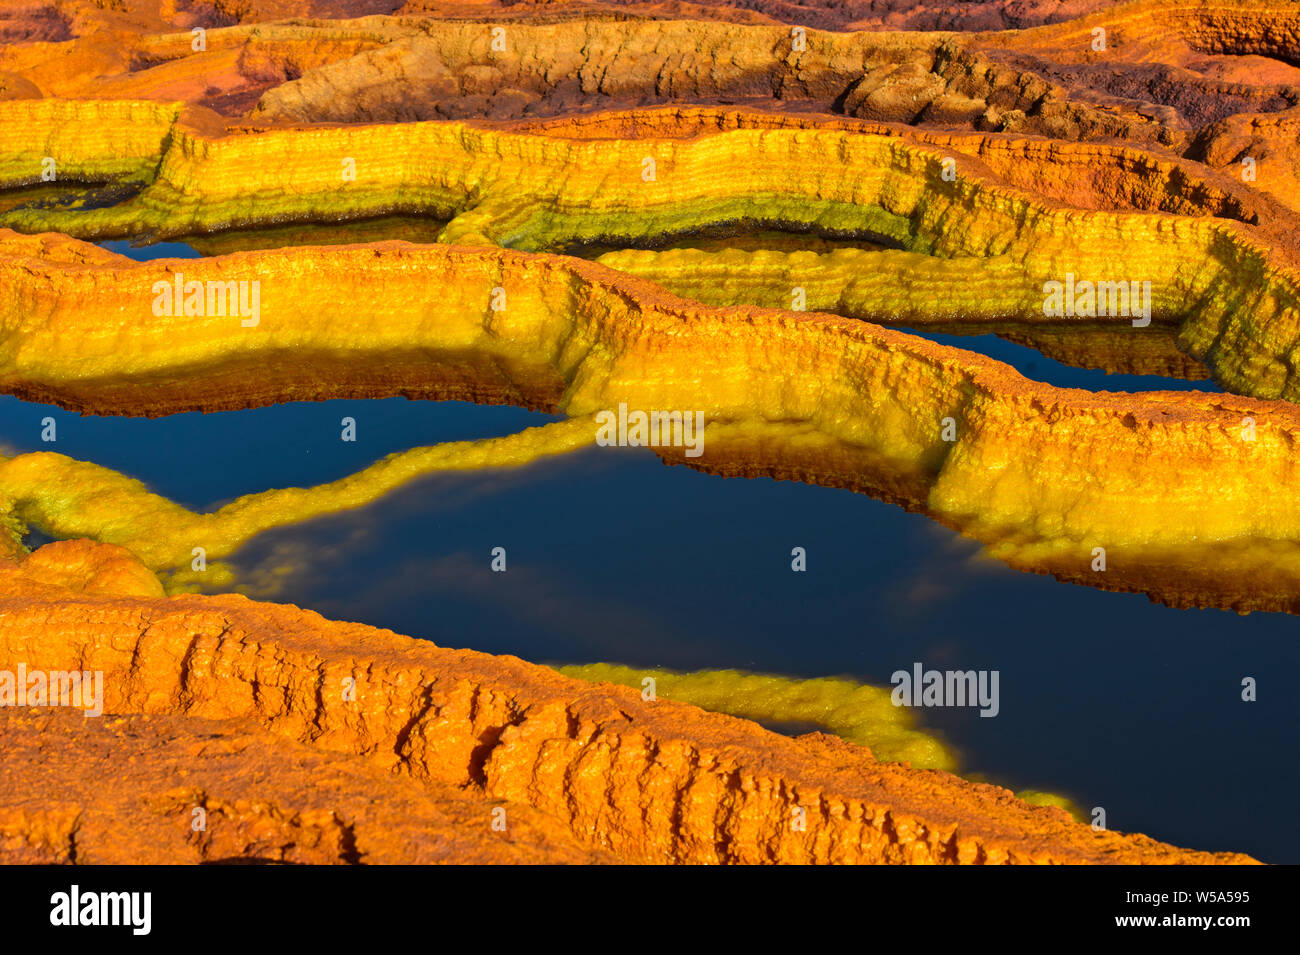 Structures de sel de couleur rouille dans une saumure acide le champ géothermique de piscine, de dépression Danakil, Dallol, Triangle Afar, Ethiopie Banque D'Images